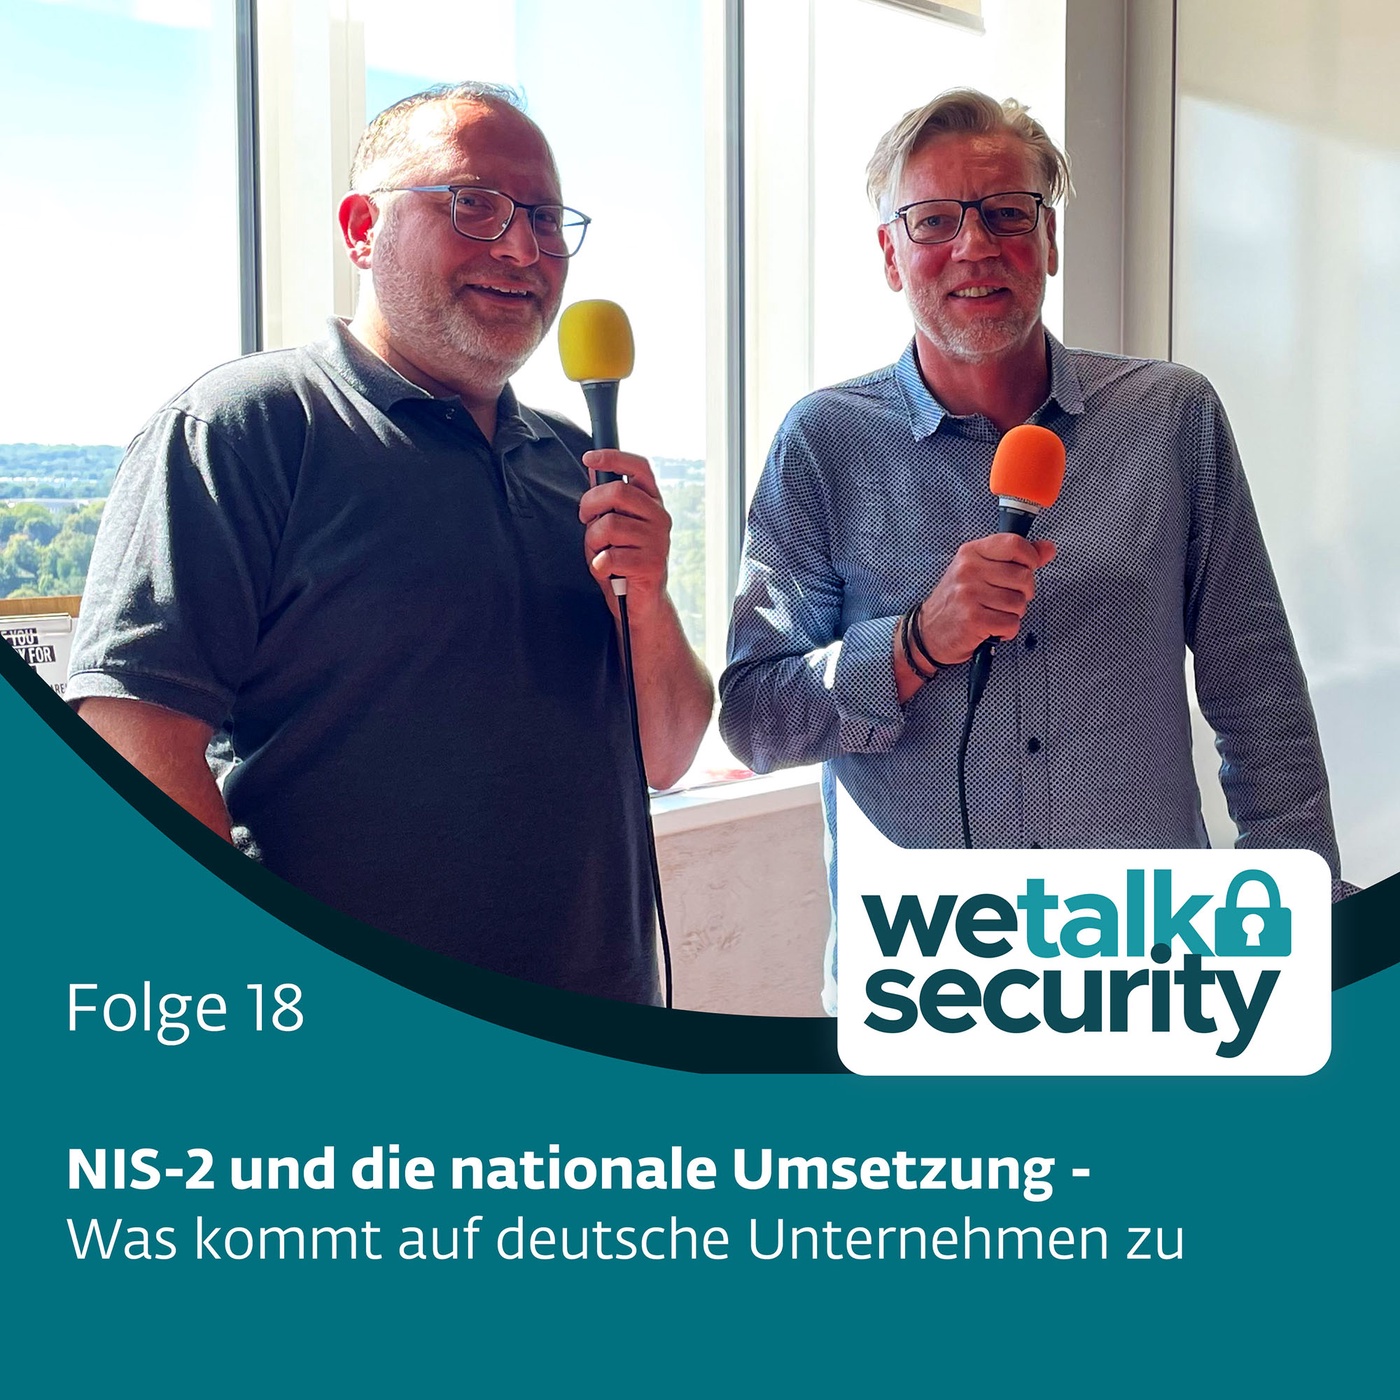 NIS2 und die nationale Umsetzung - Was kommt auf deutsche Unternehmen zu | Folge 18